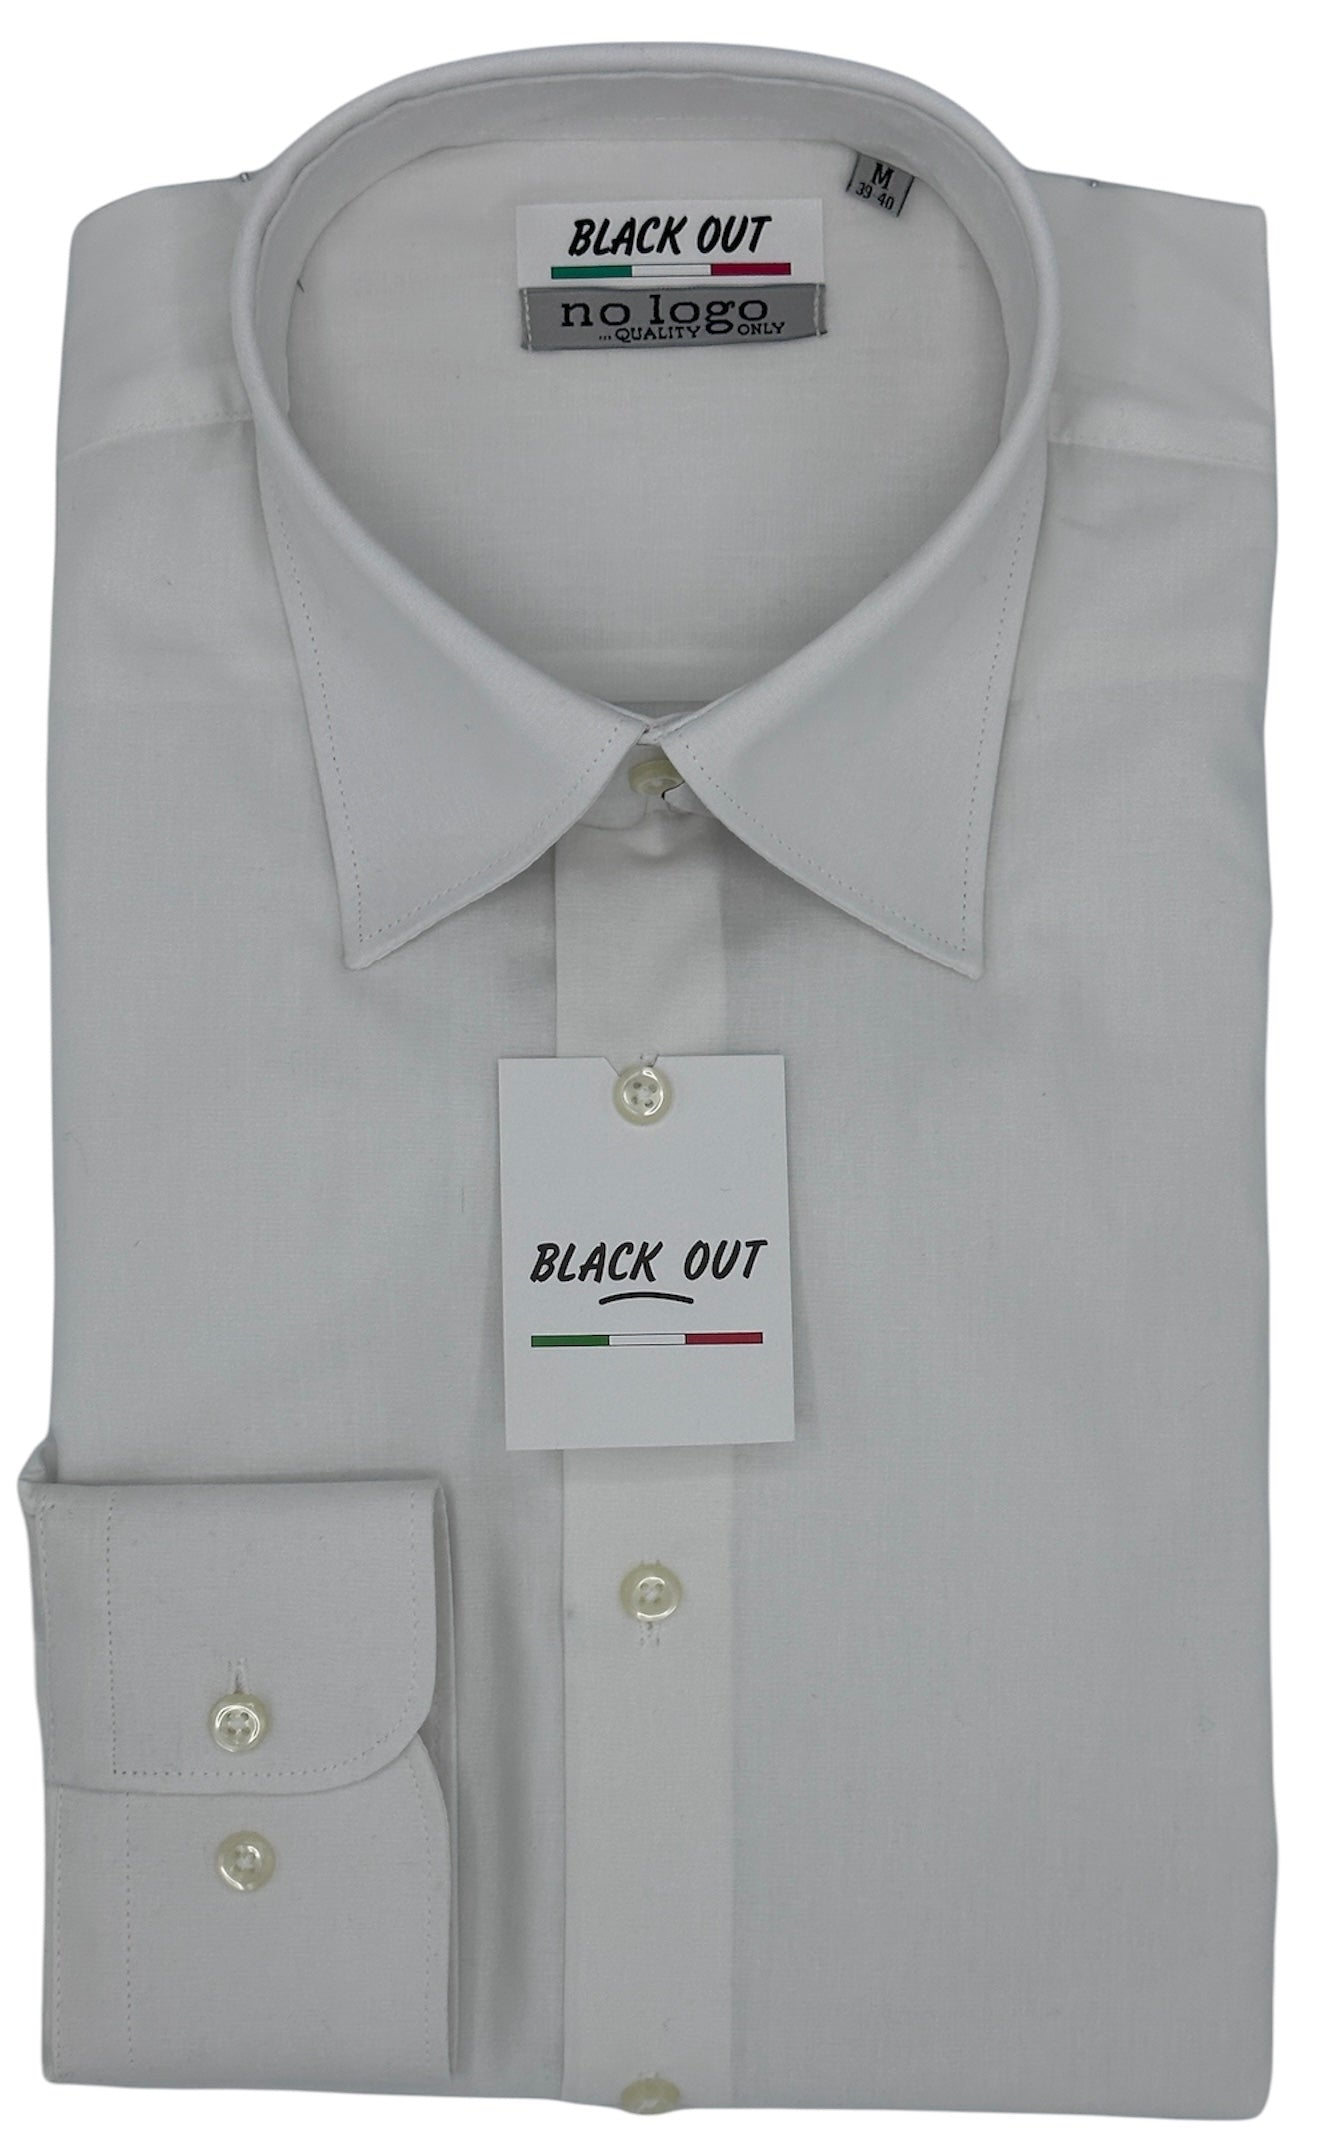 Camicia bianca collo classico Giglio 5155 col. 100